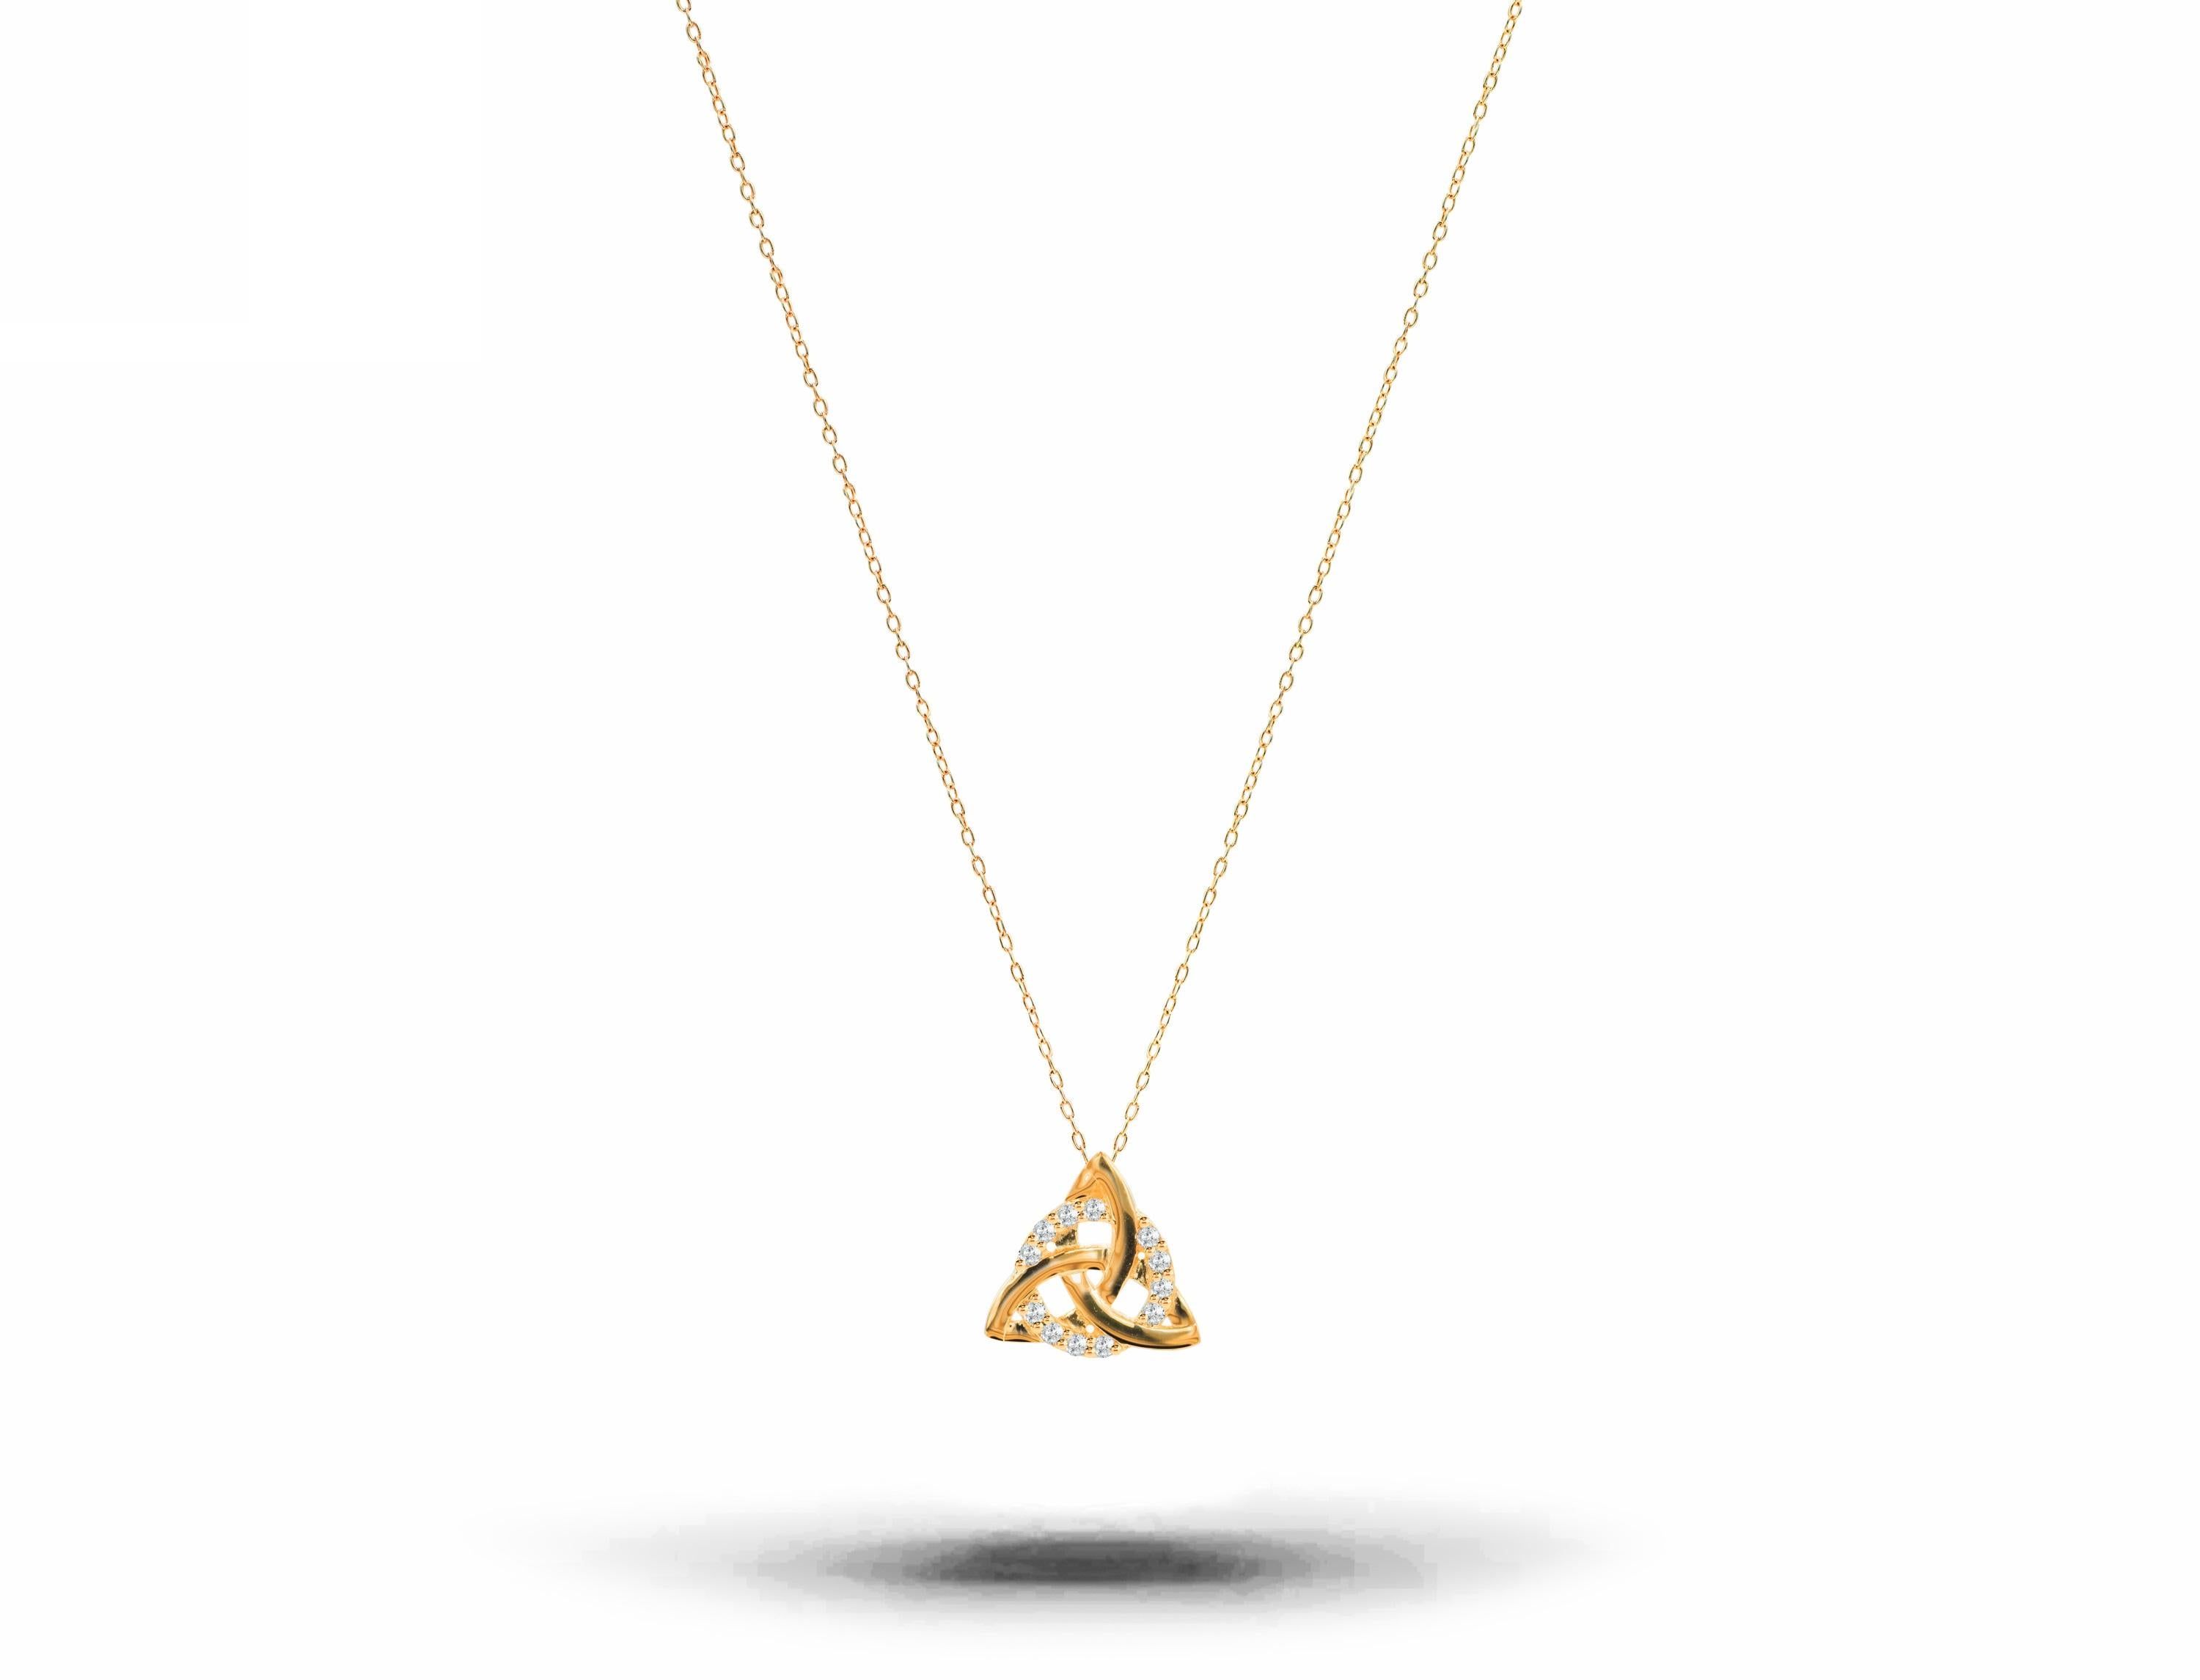 Ce magnifique petit pendentif en forme de nœud celtique est réalisé en or massif 14k et orné de diamants naturels blancs de taille ronde.
Disponible en trois couleurs d'or : Or blanc / Or rose / Or jaune.

Parfait pour être porté seul pour un style